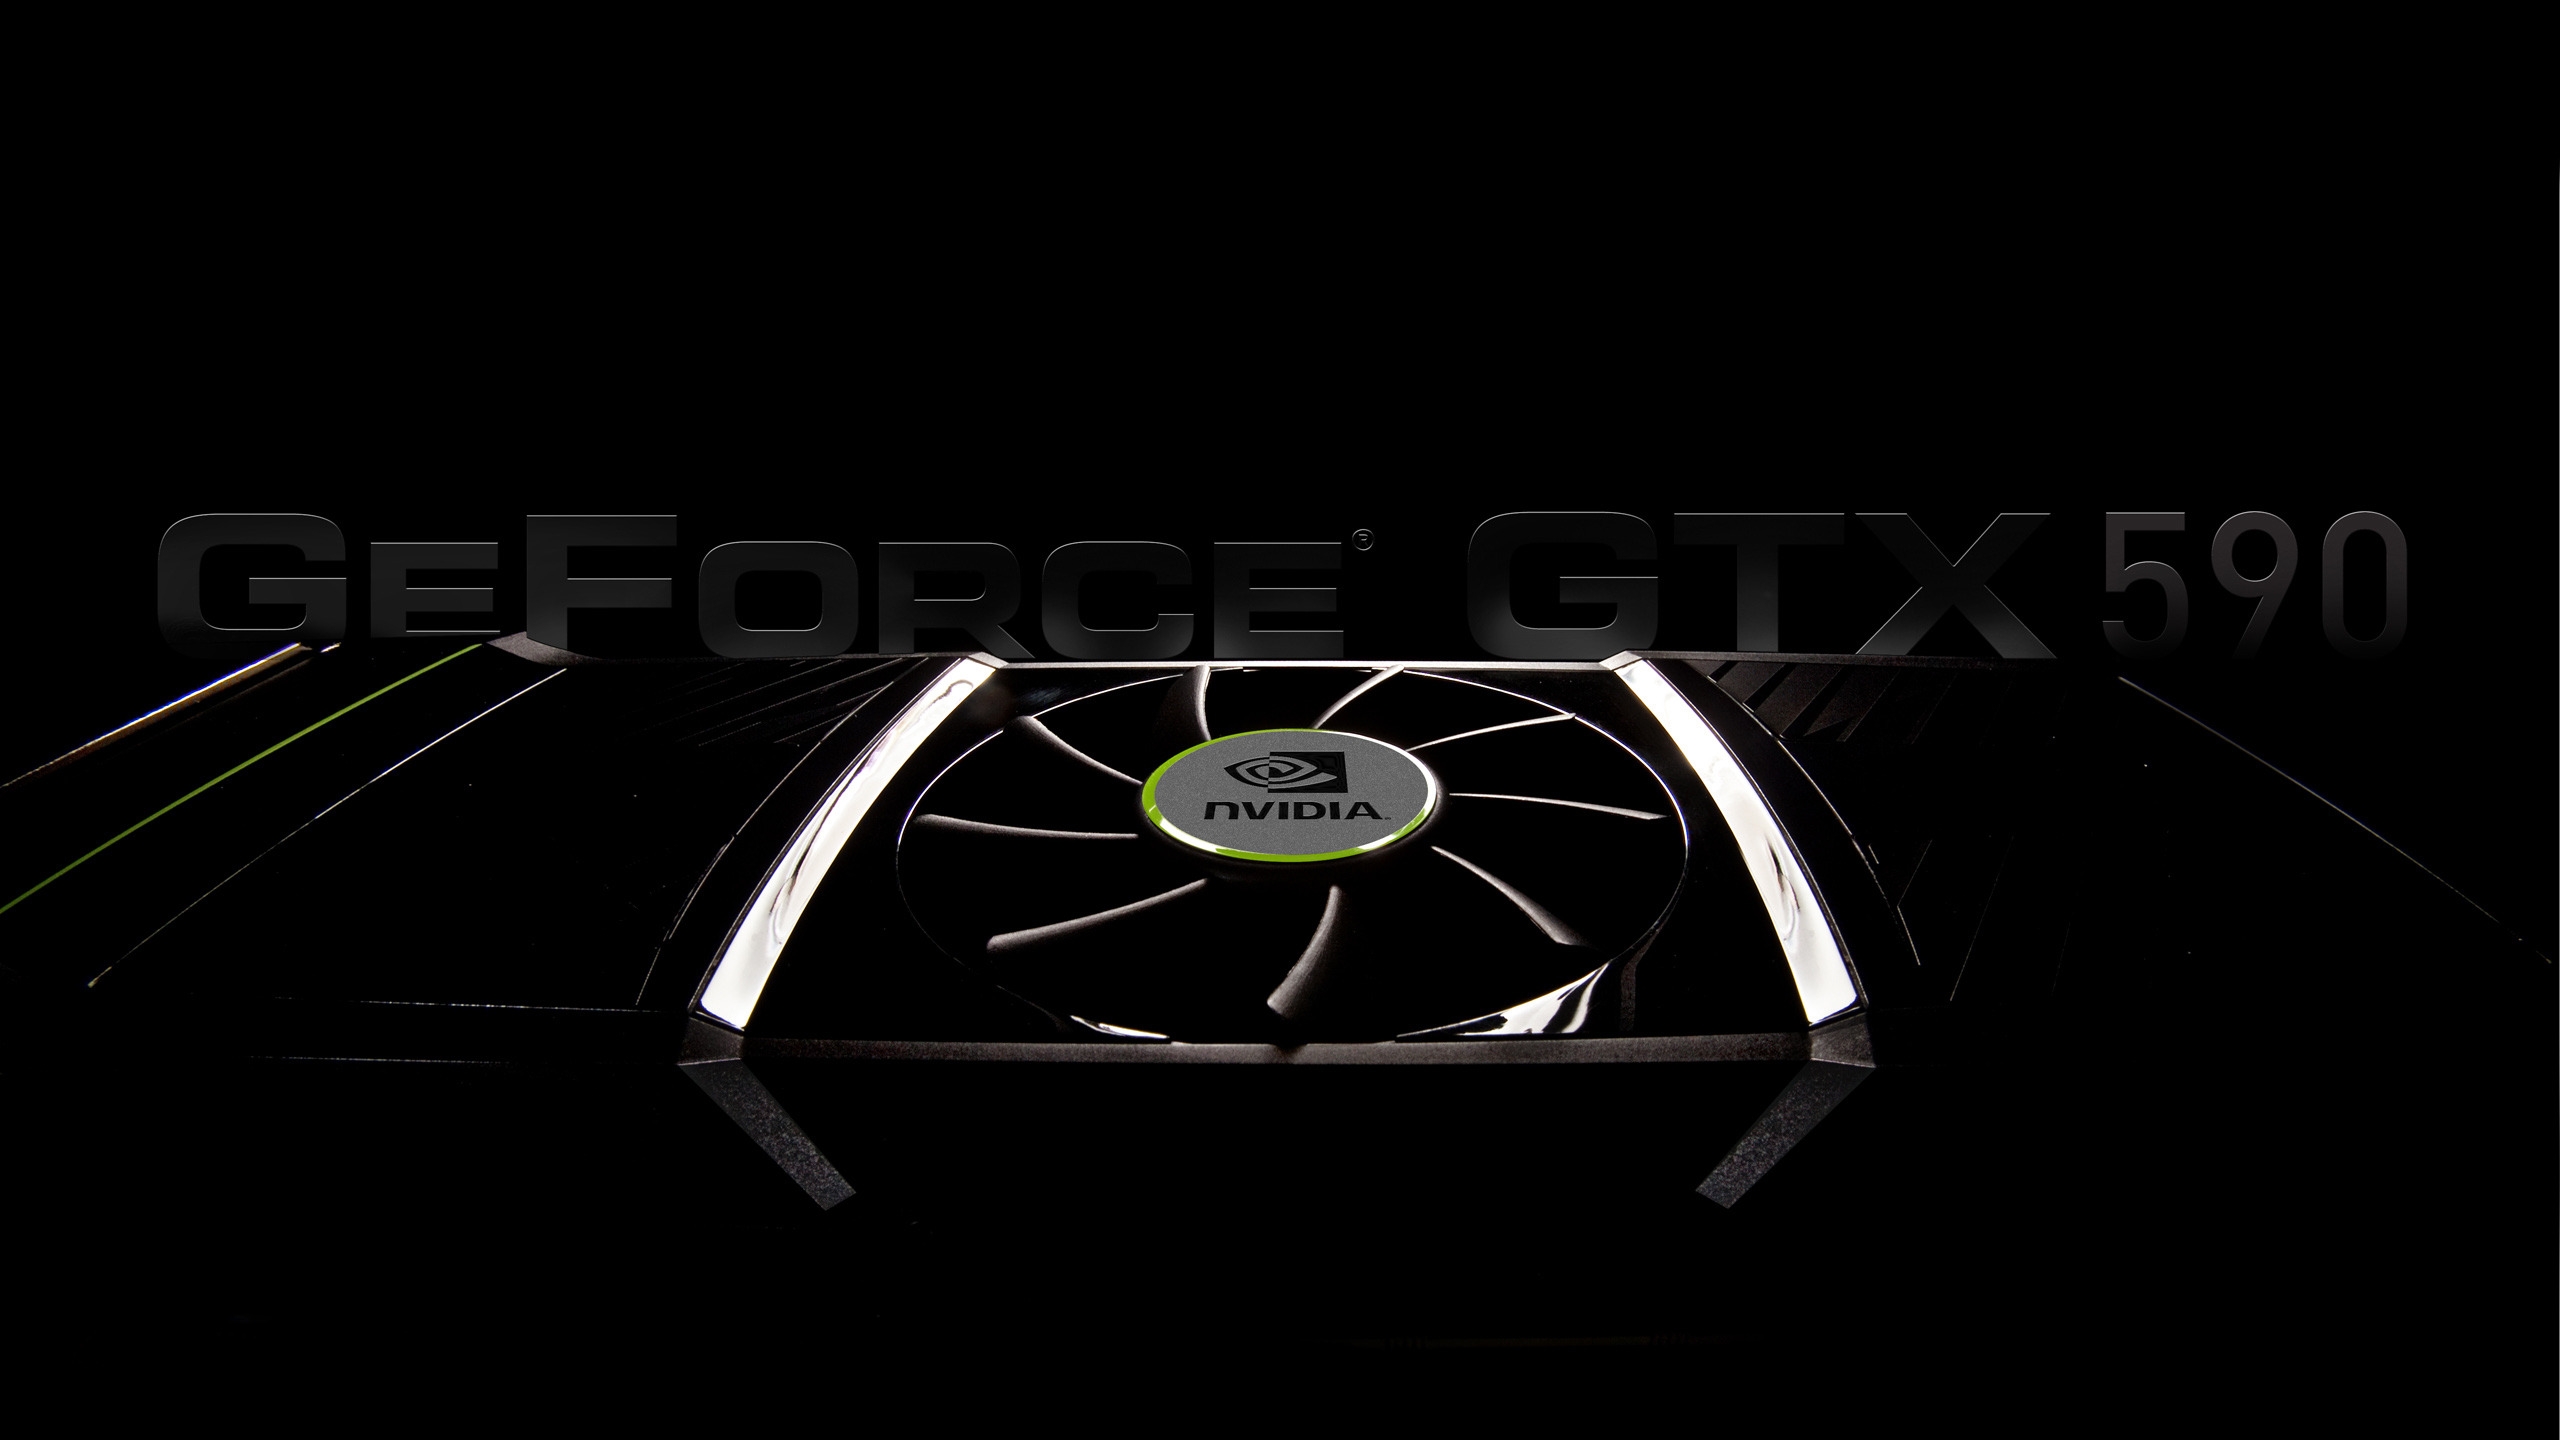 GeForce GTX 590 for 2560x1440 HDTV resolution